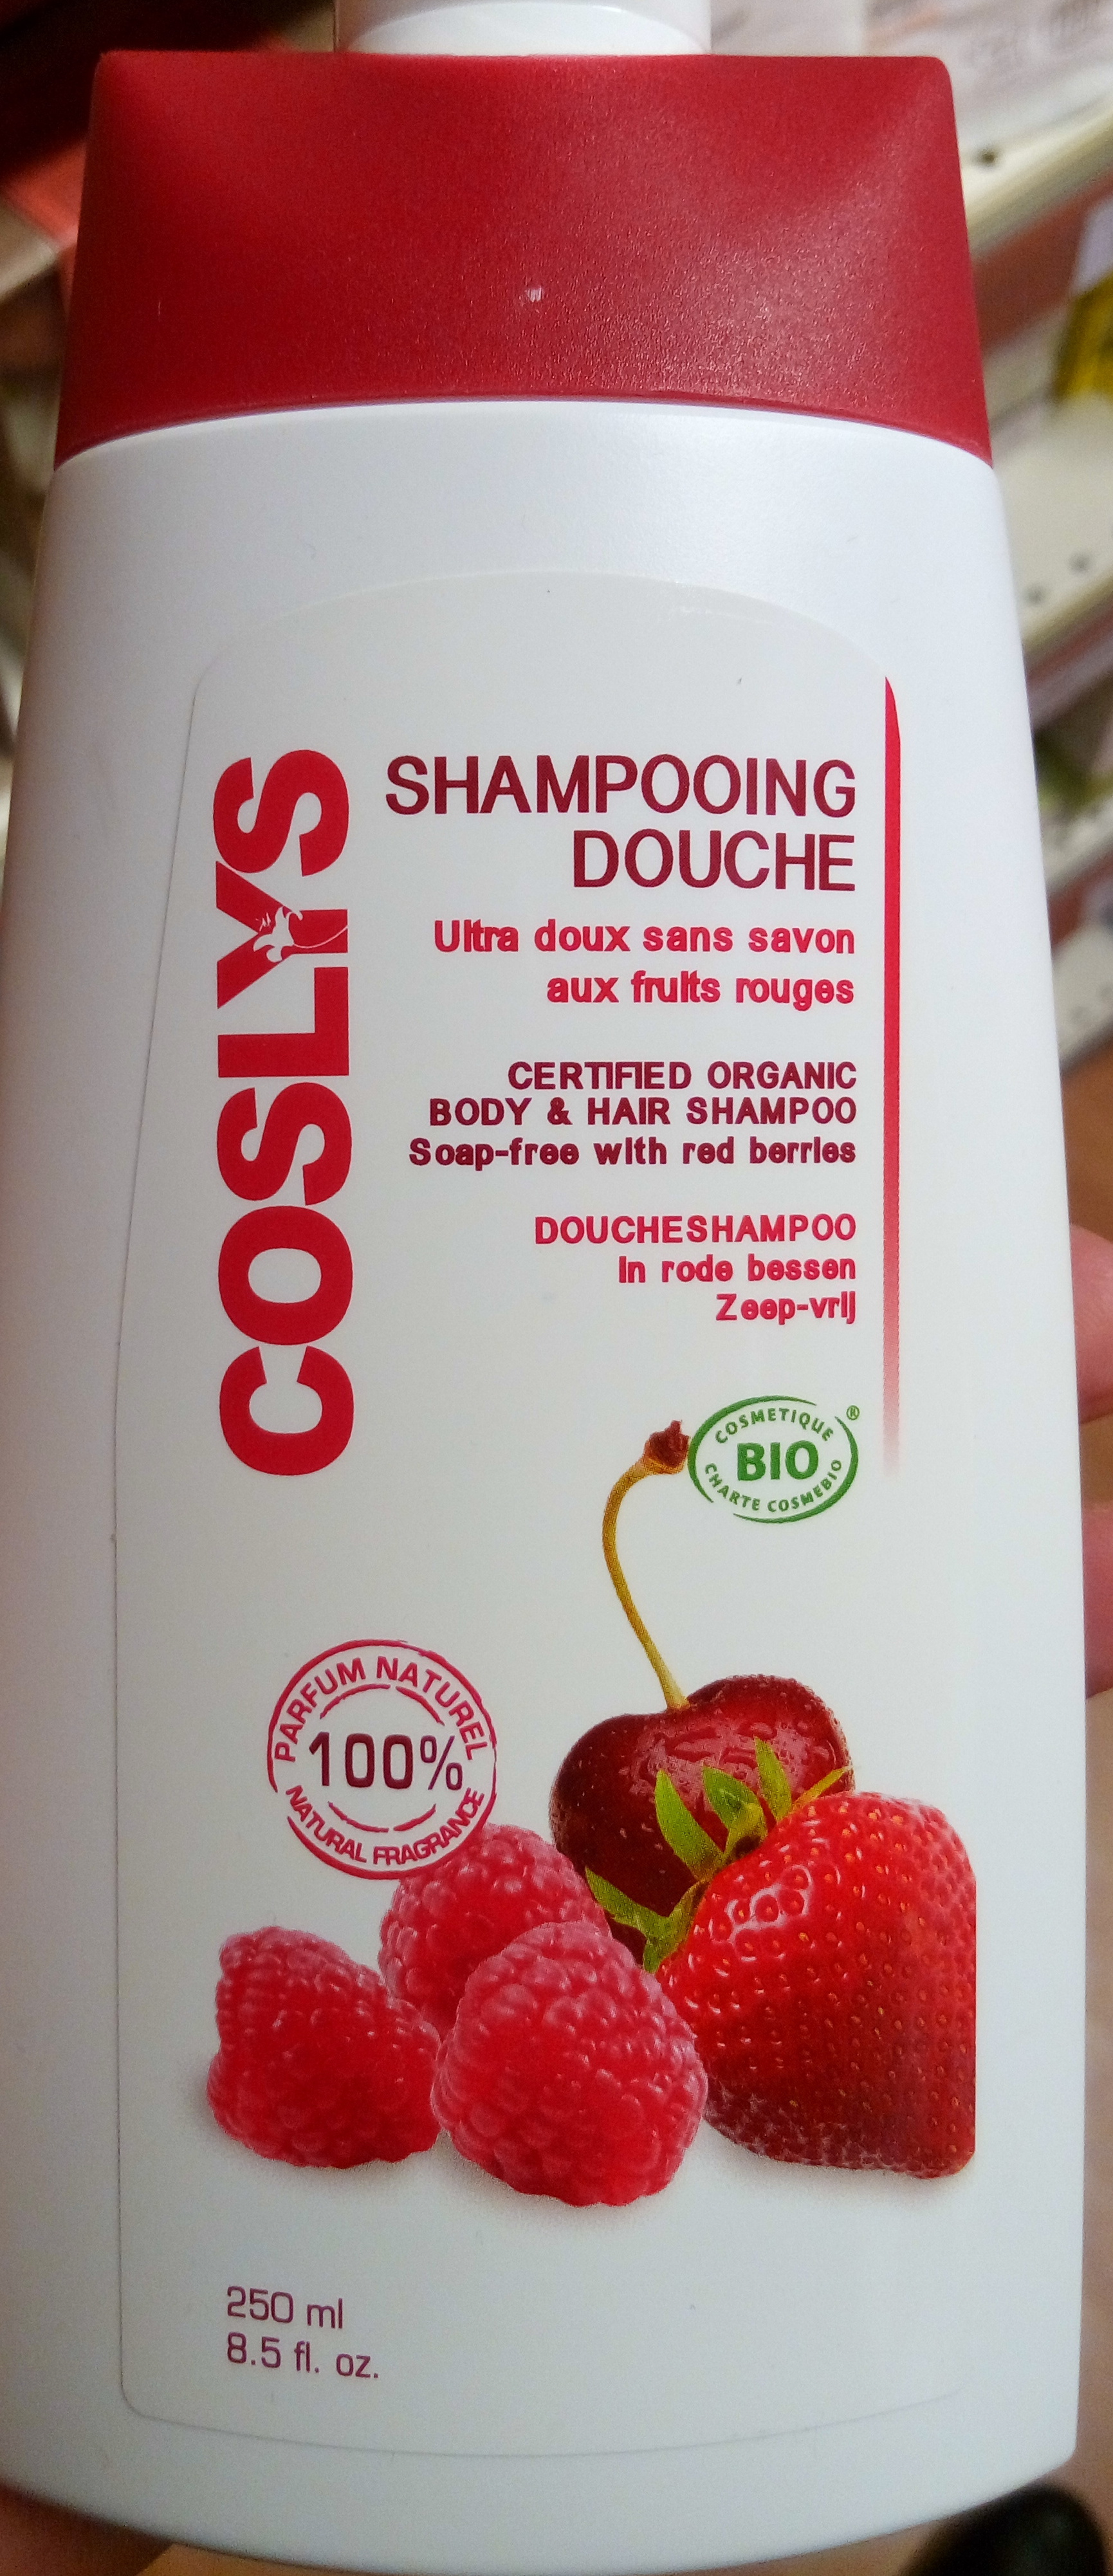 Shampooing douche ultra doux sans savon aux fruits rouges - Tuote - fr